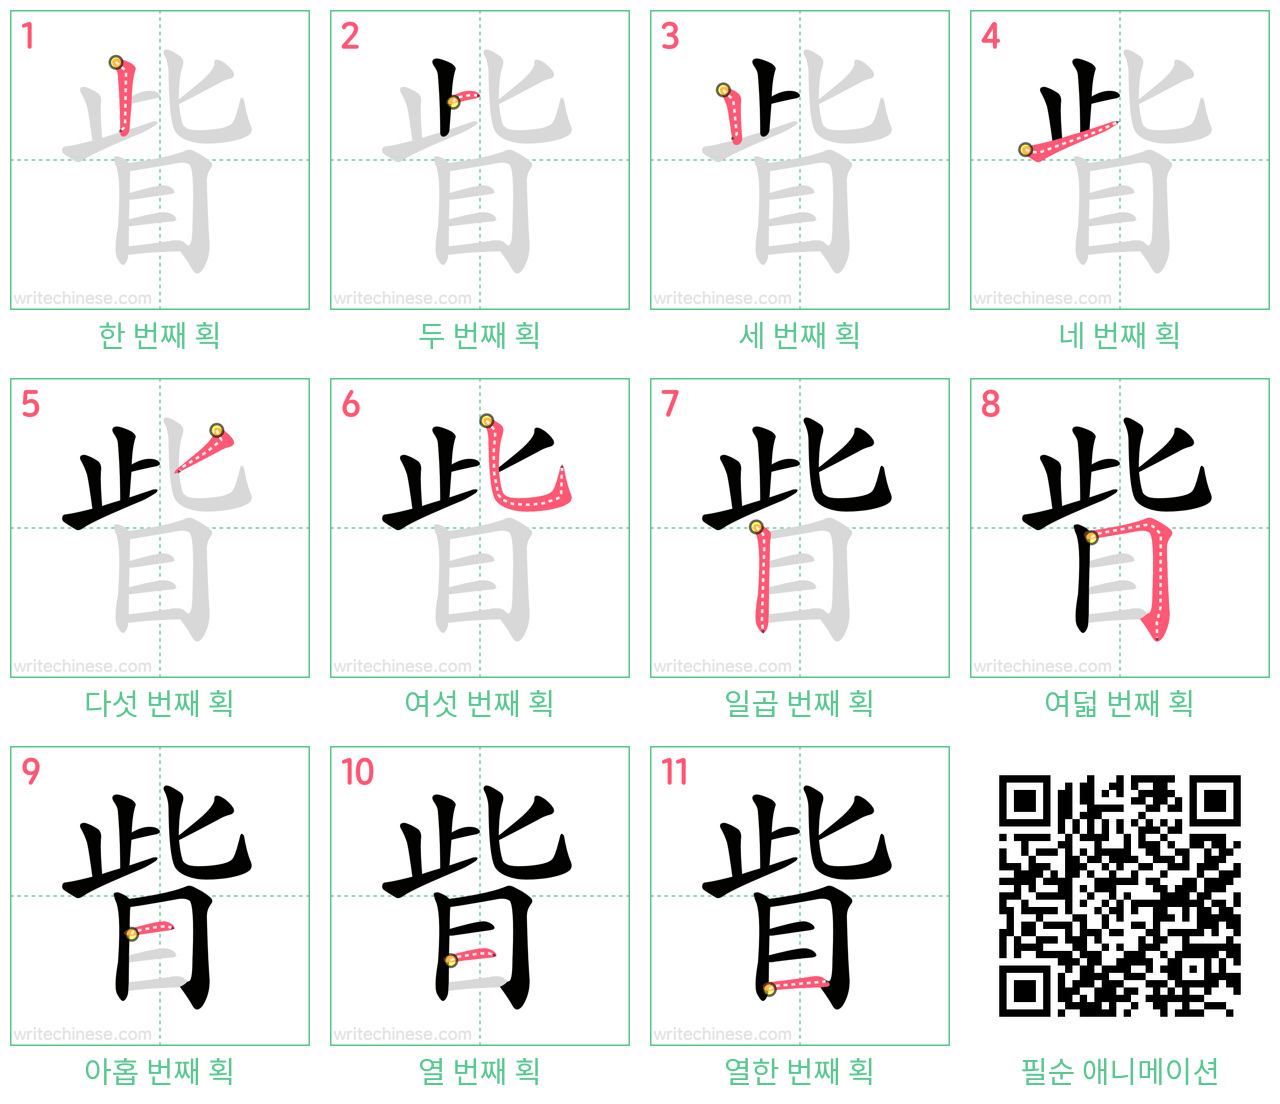 眥 step-by-step stroke order diagrams